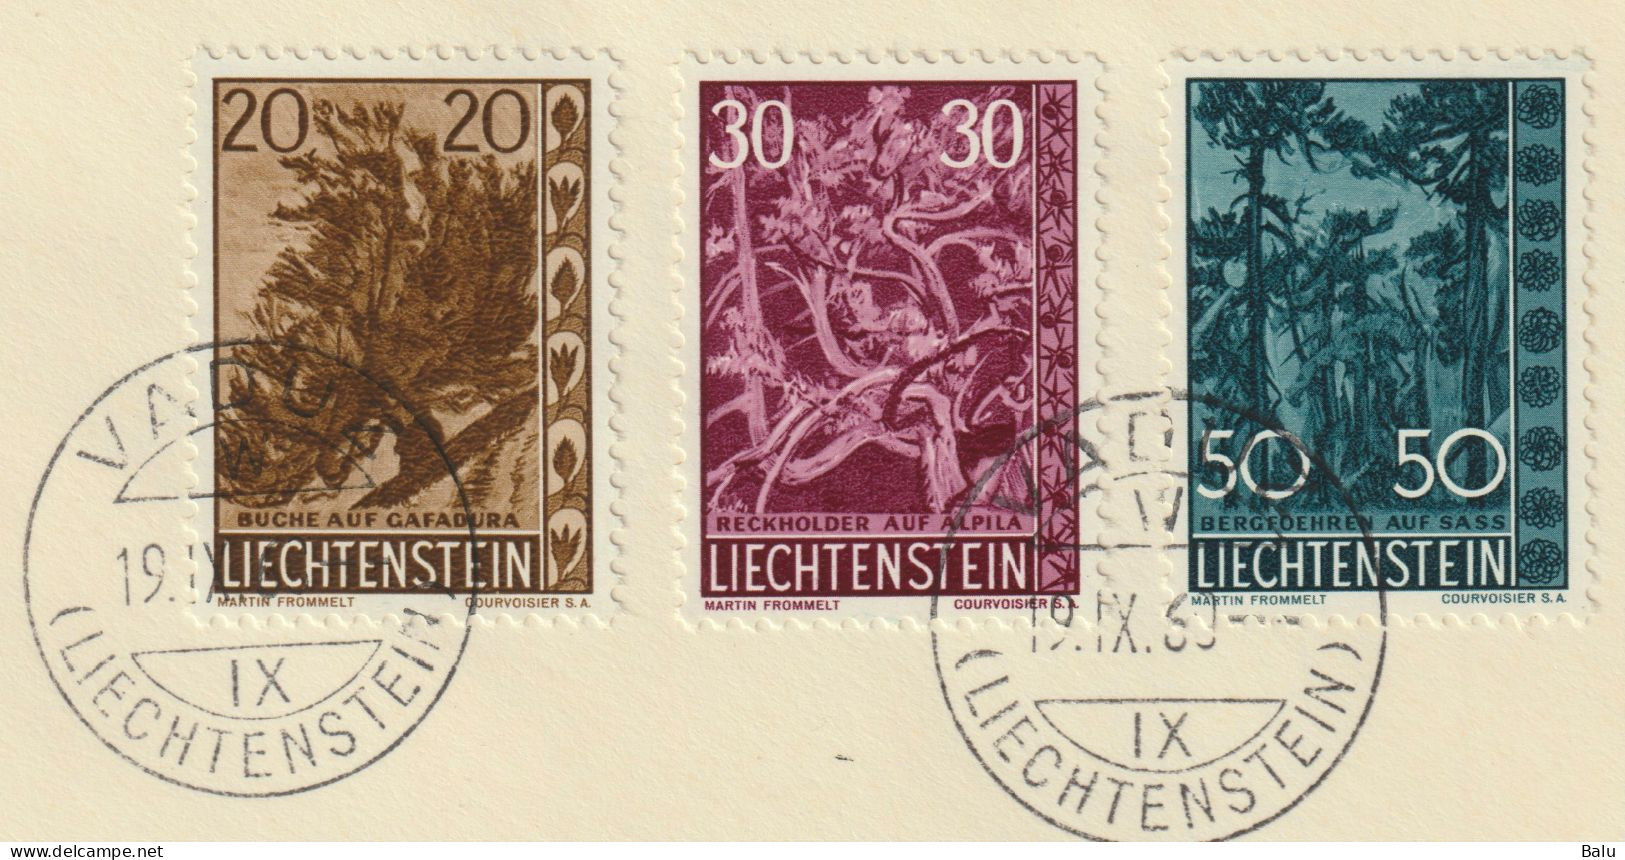 Liechtenstein 1960 Bäume Michel Nr. 399-401 FDC, 3 Scans, Michel 110,-€ - FDC